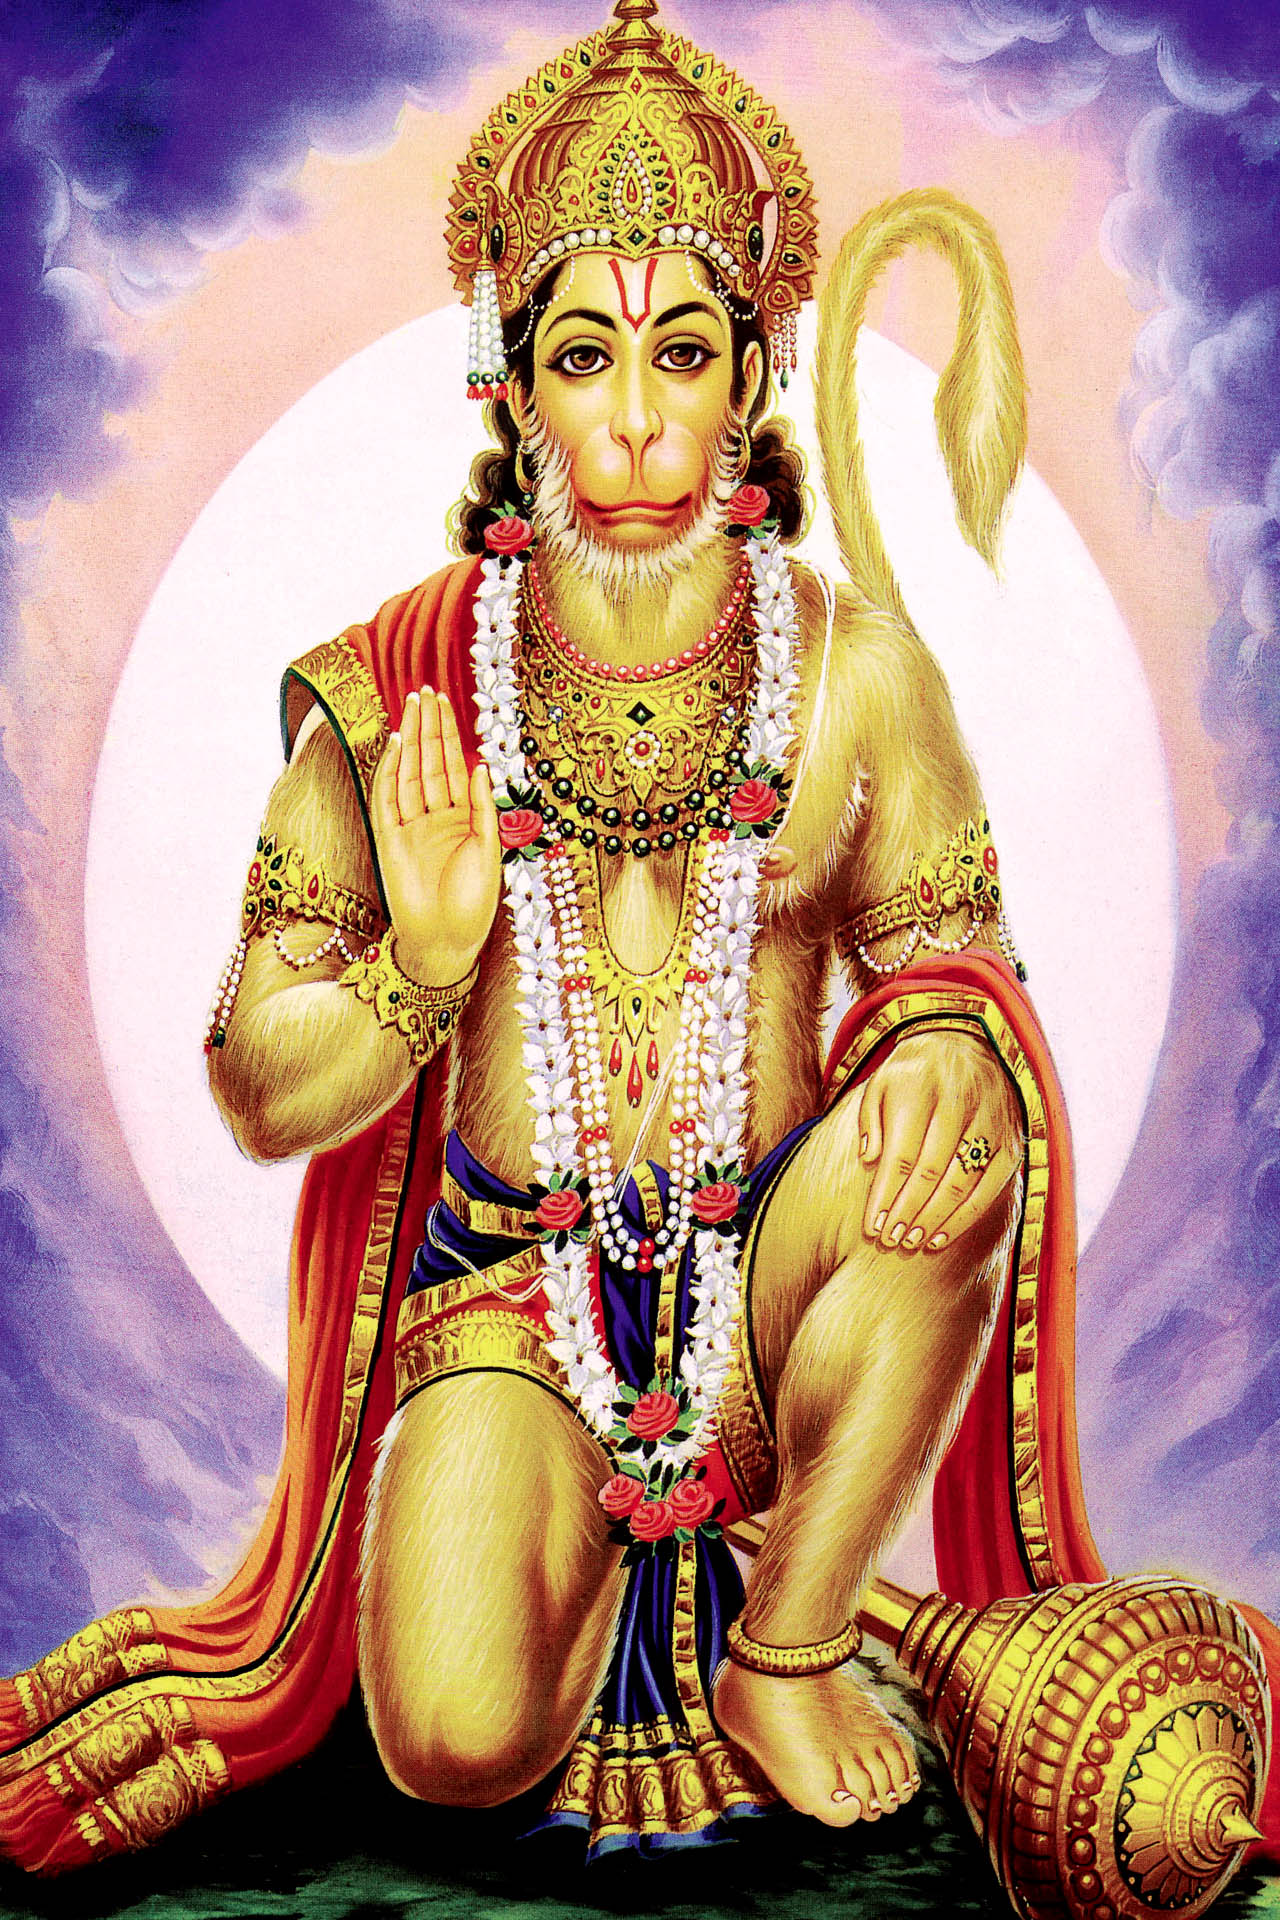 god hanuman ji wallpaper for mobile | Full HD Imagess